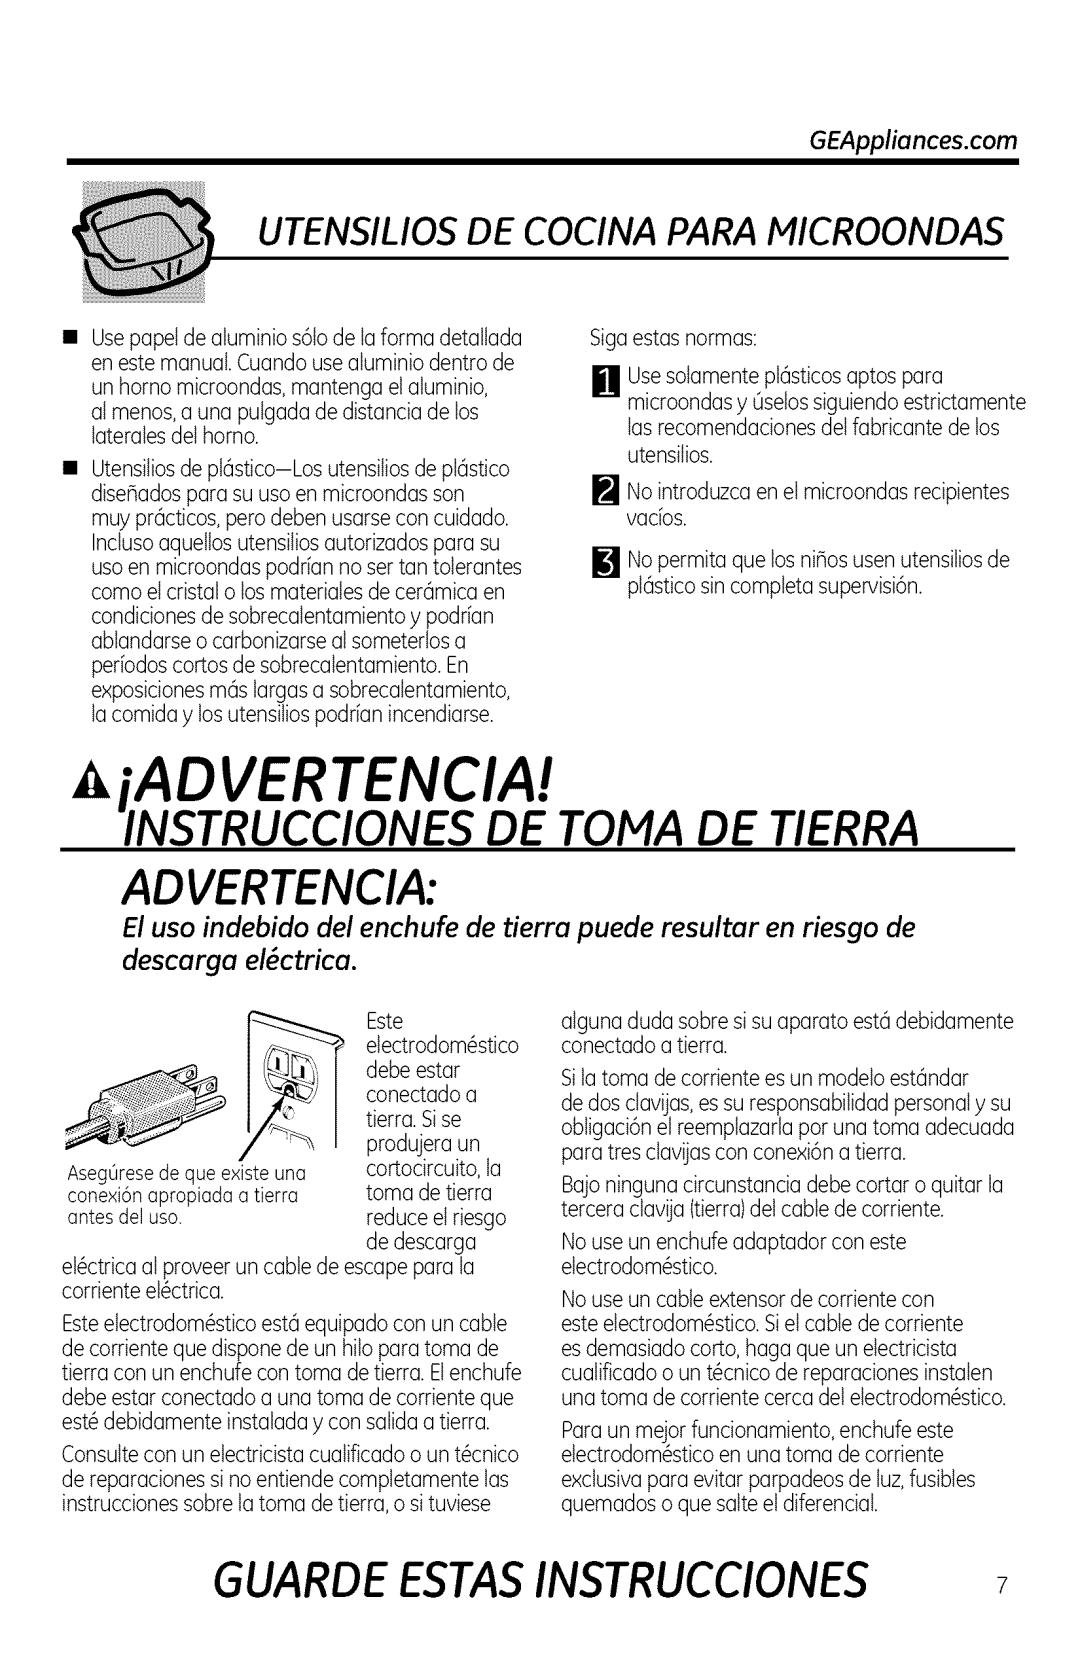 GE JNM1951 manual iADVERTENCIA, Instrucciones De Toma De Tierra, Advertencia, descurgu el_ctricu, Guarde Estasinstrucciones 